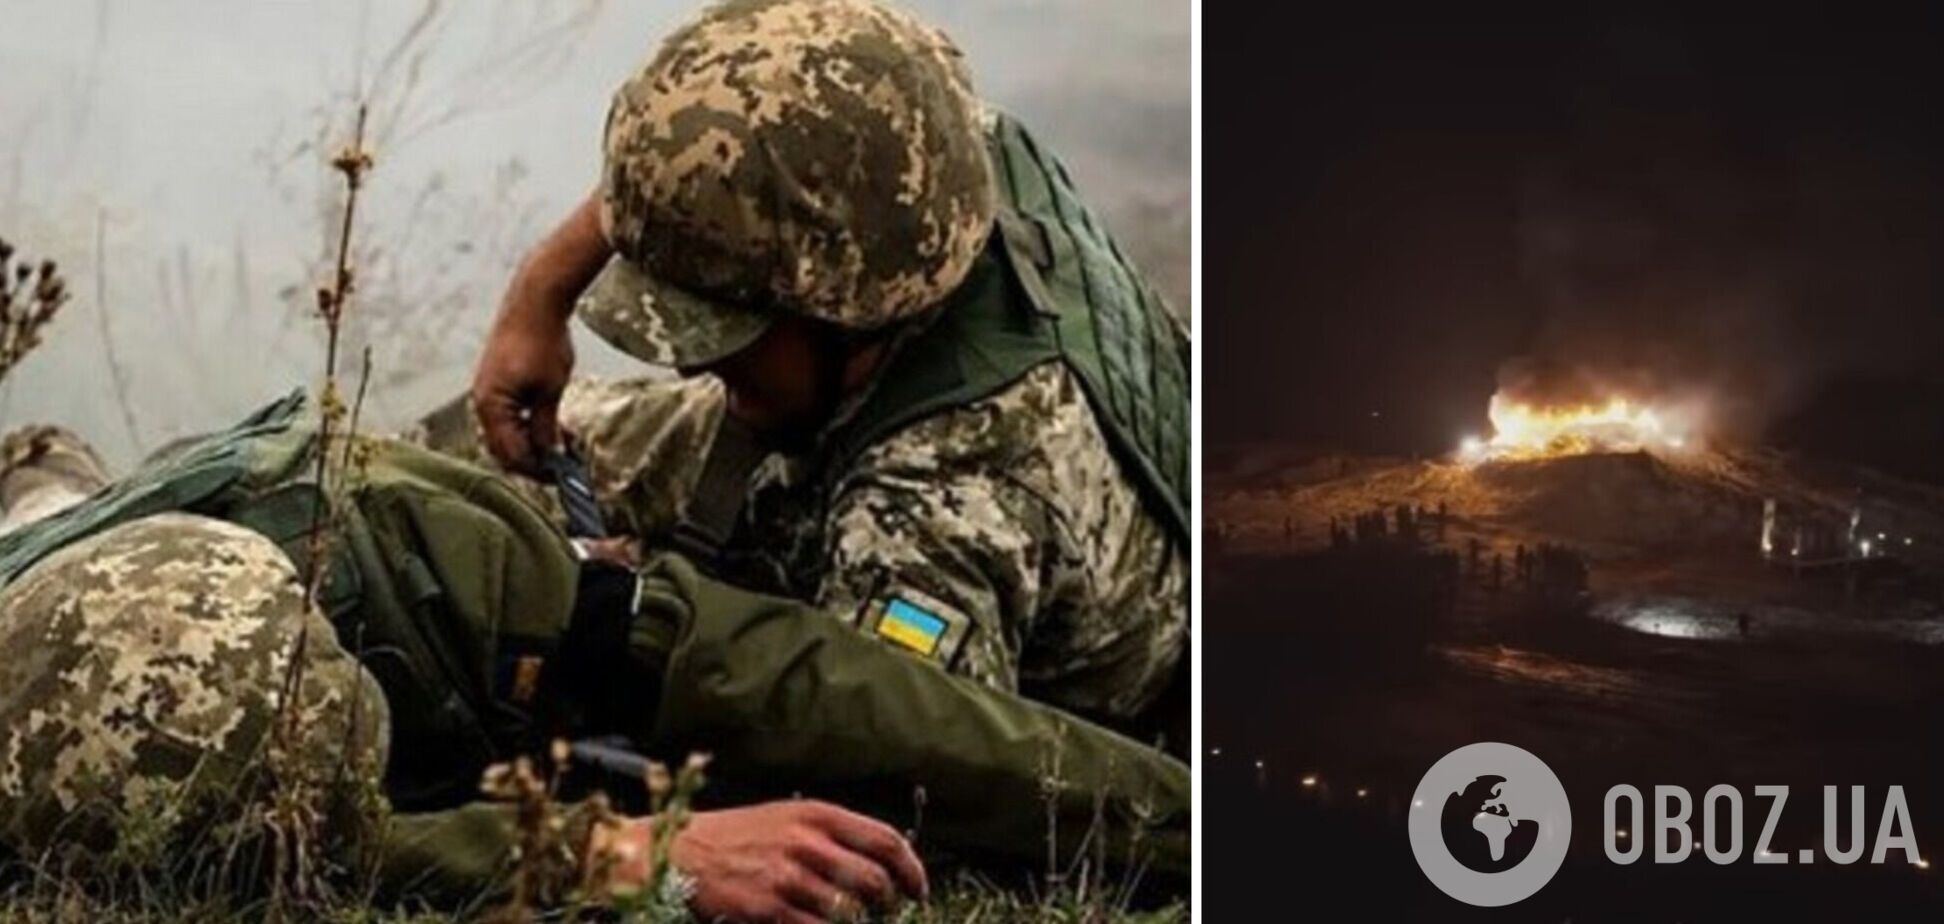 'Отомстим!' Бойцы полка 'Азов' почтили память павших побратимов. Видео